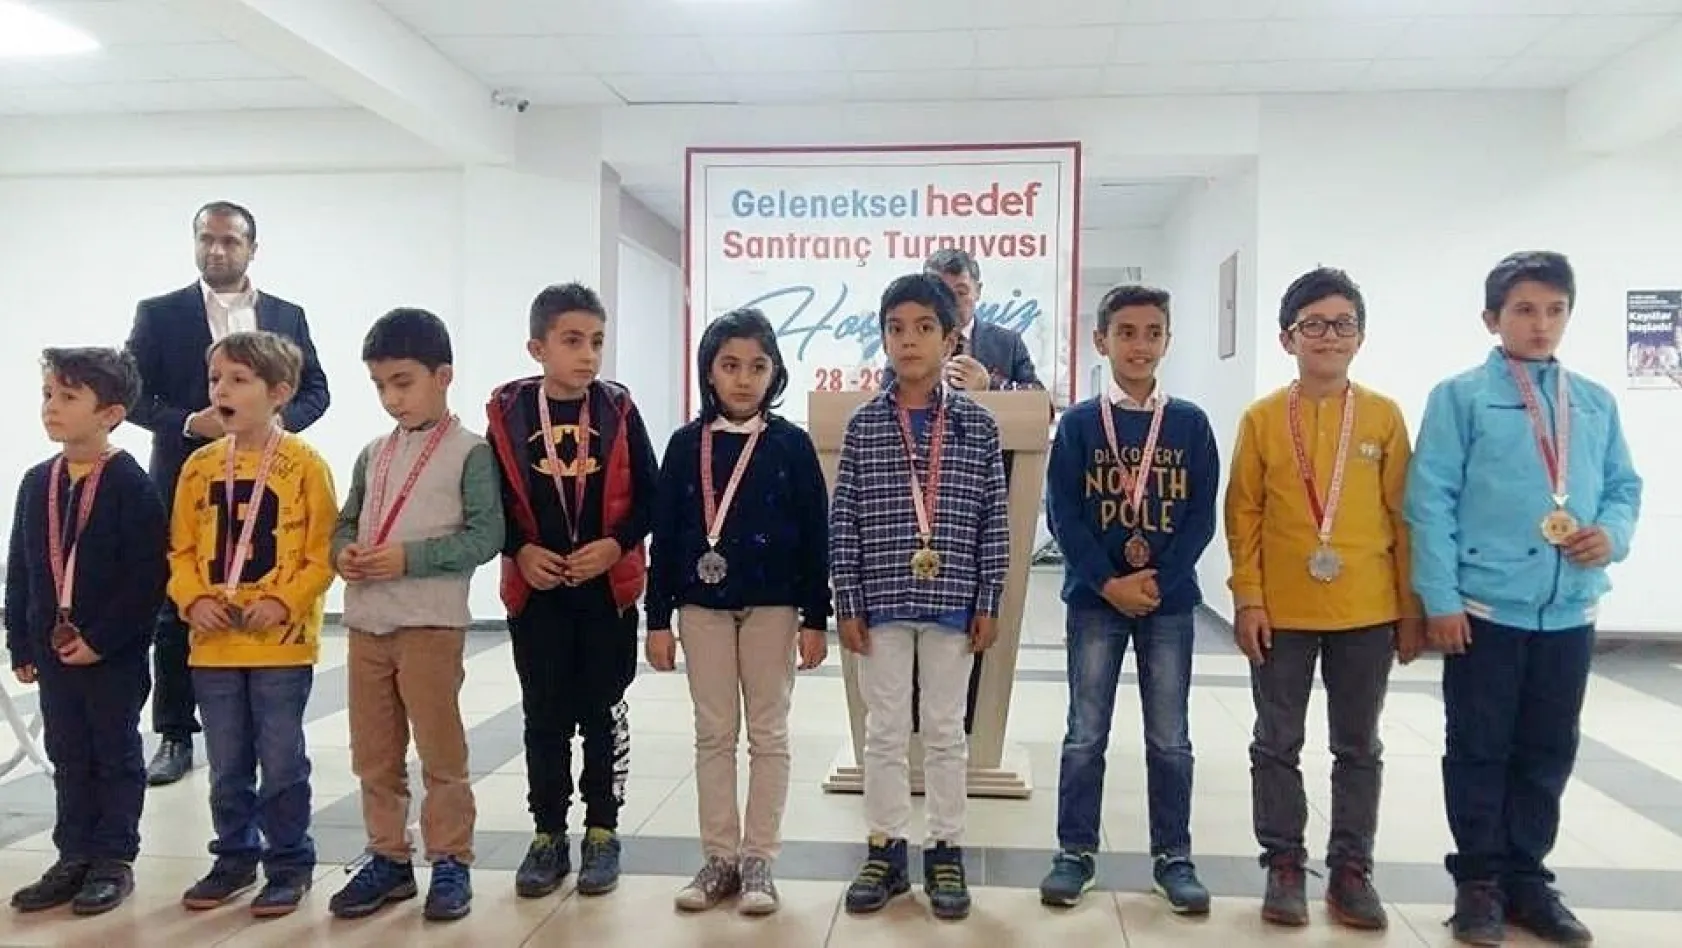 Satrancın küçük şampiyonları altınla ödüllendirildi
